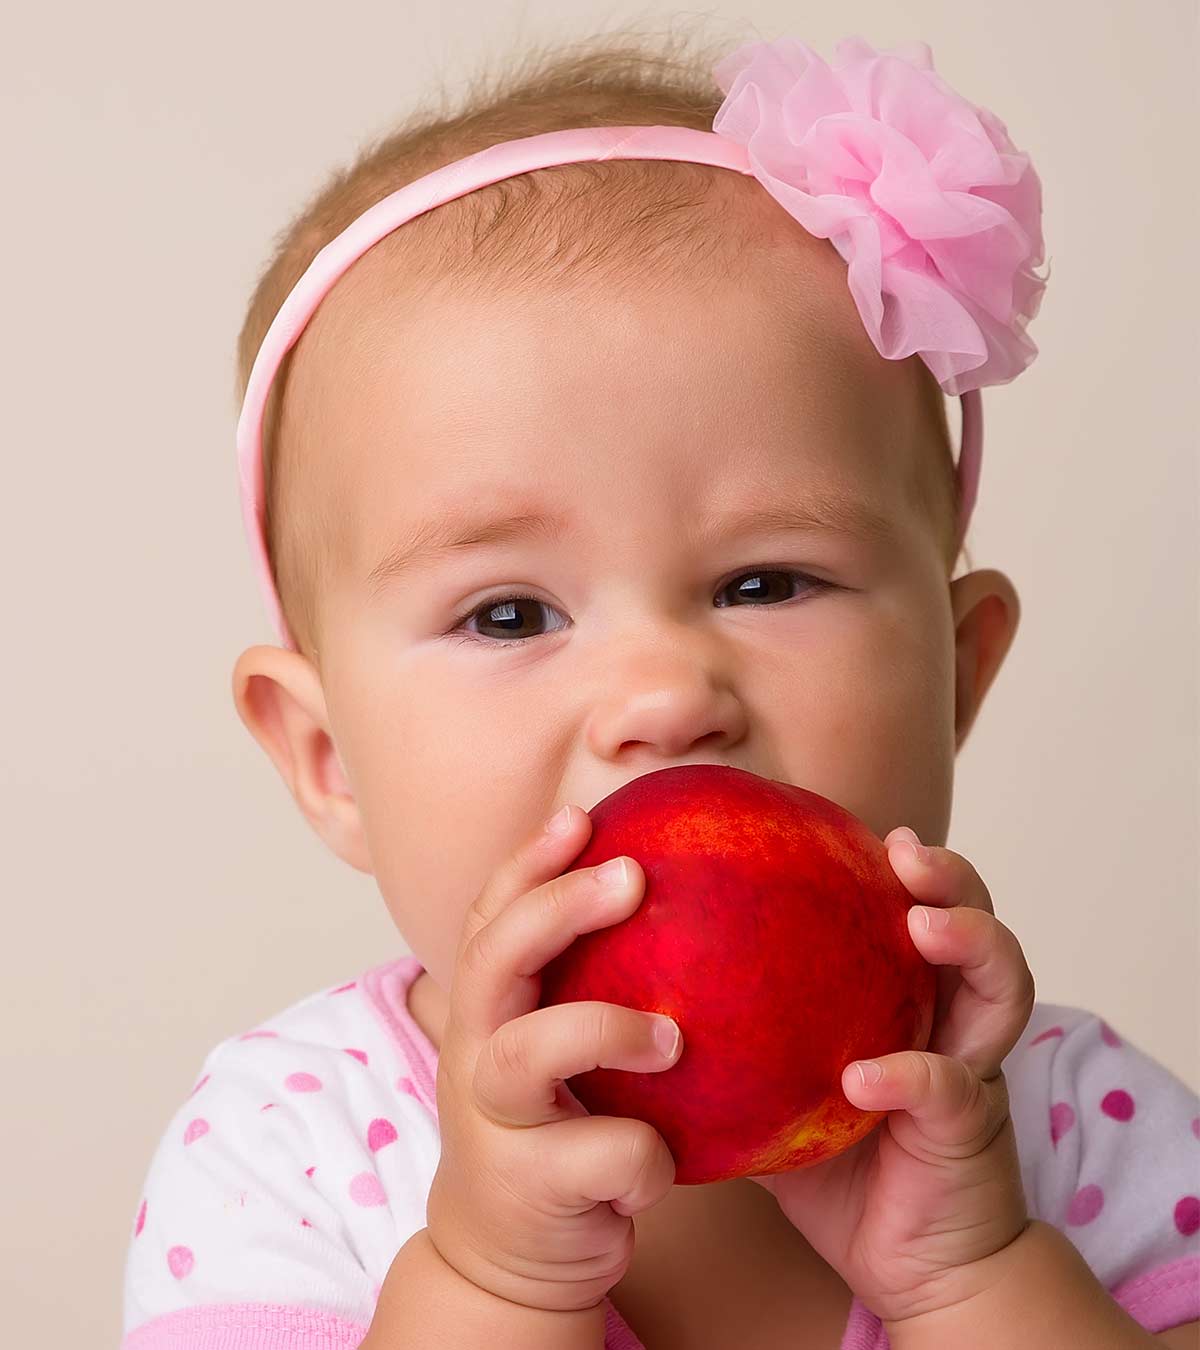 婴儿桃子:健康益处和惊人的食谱